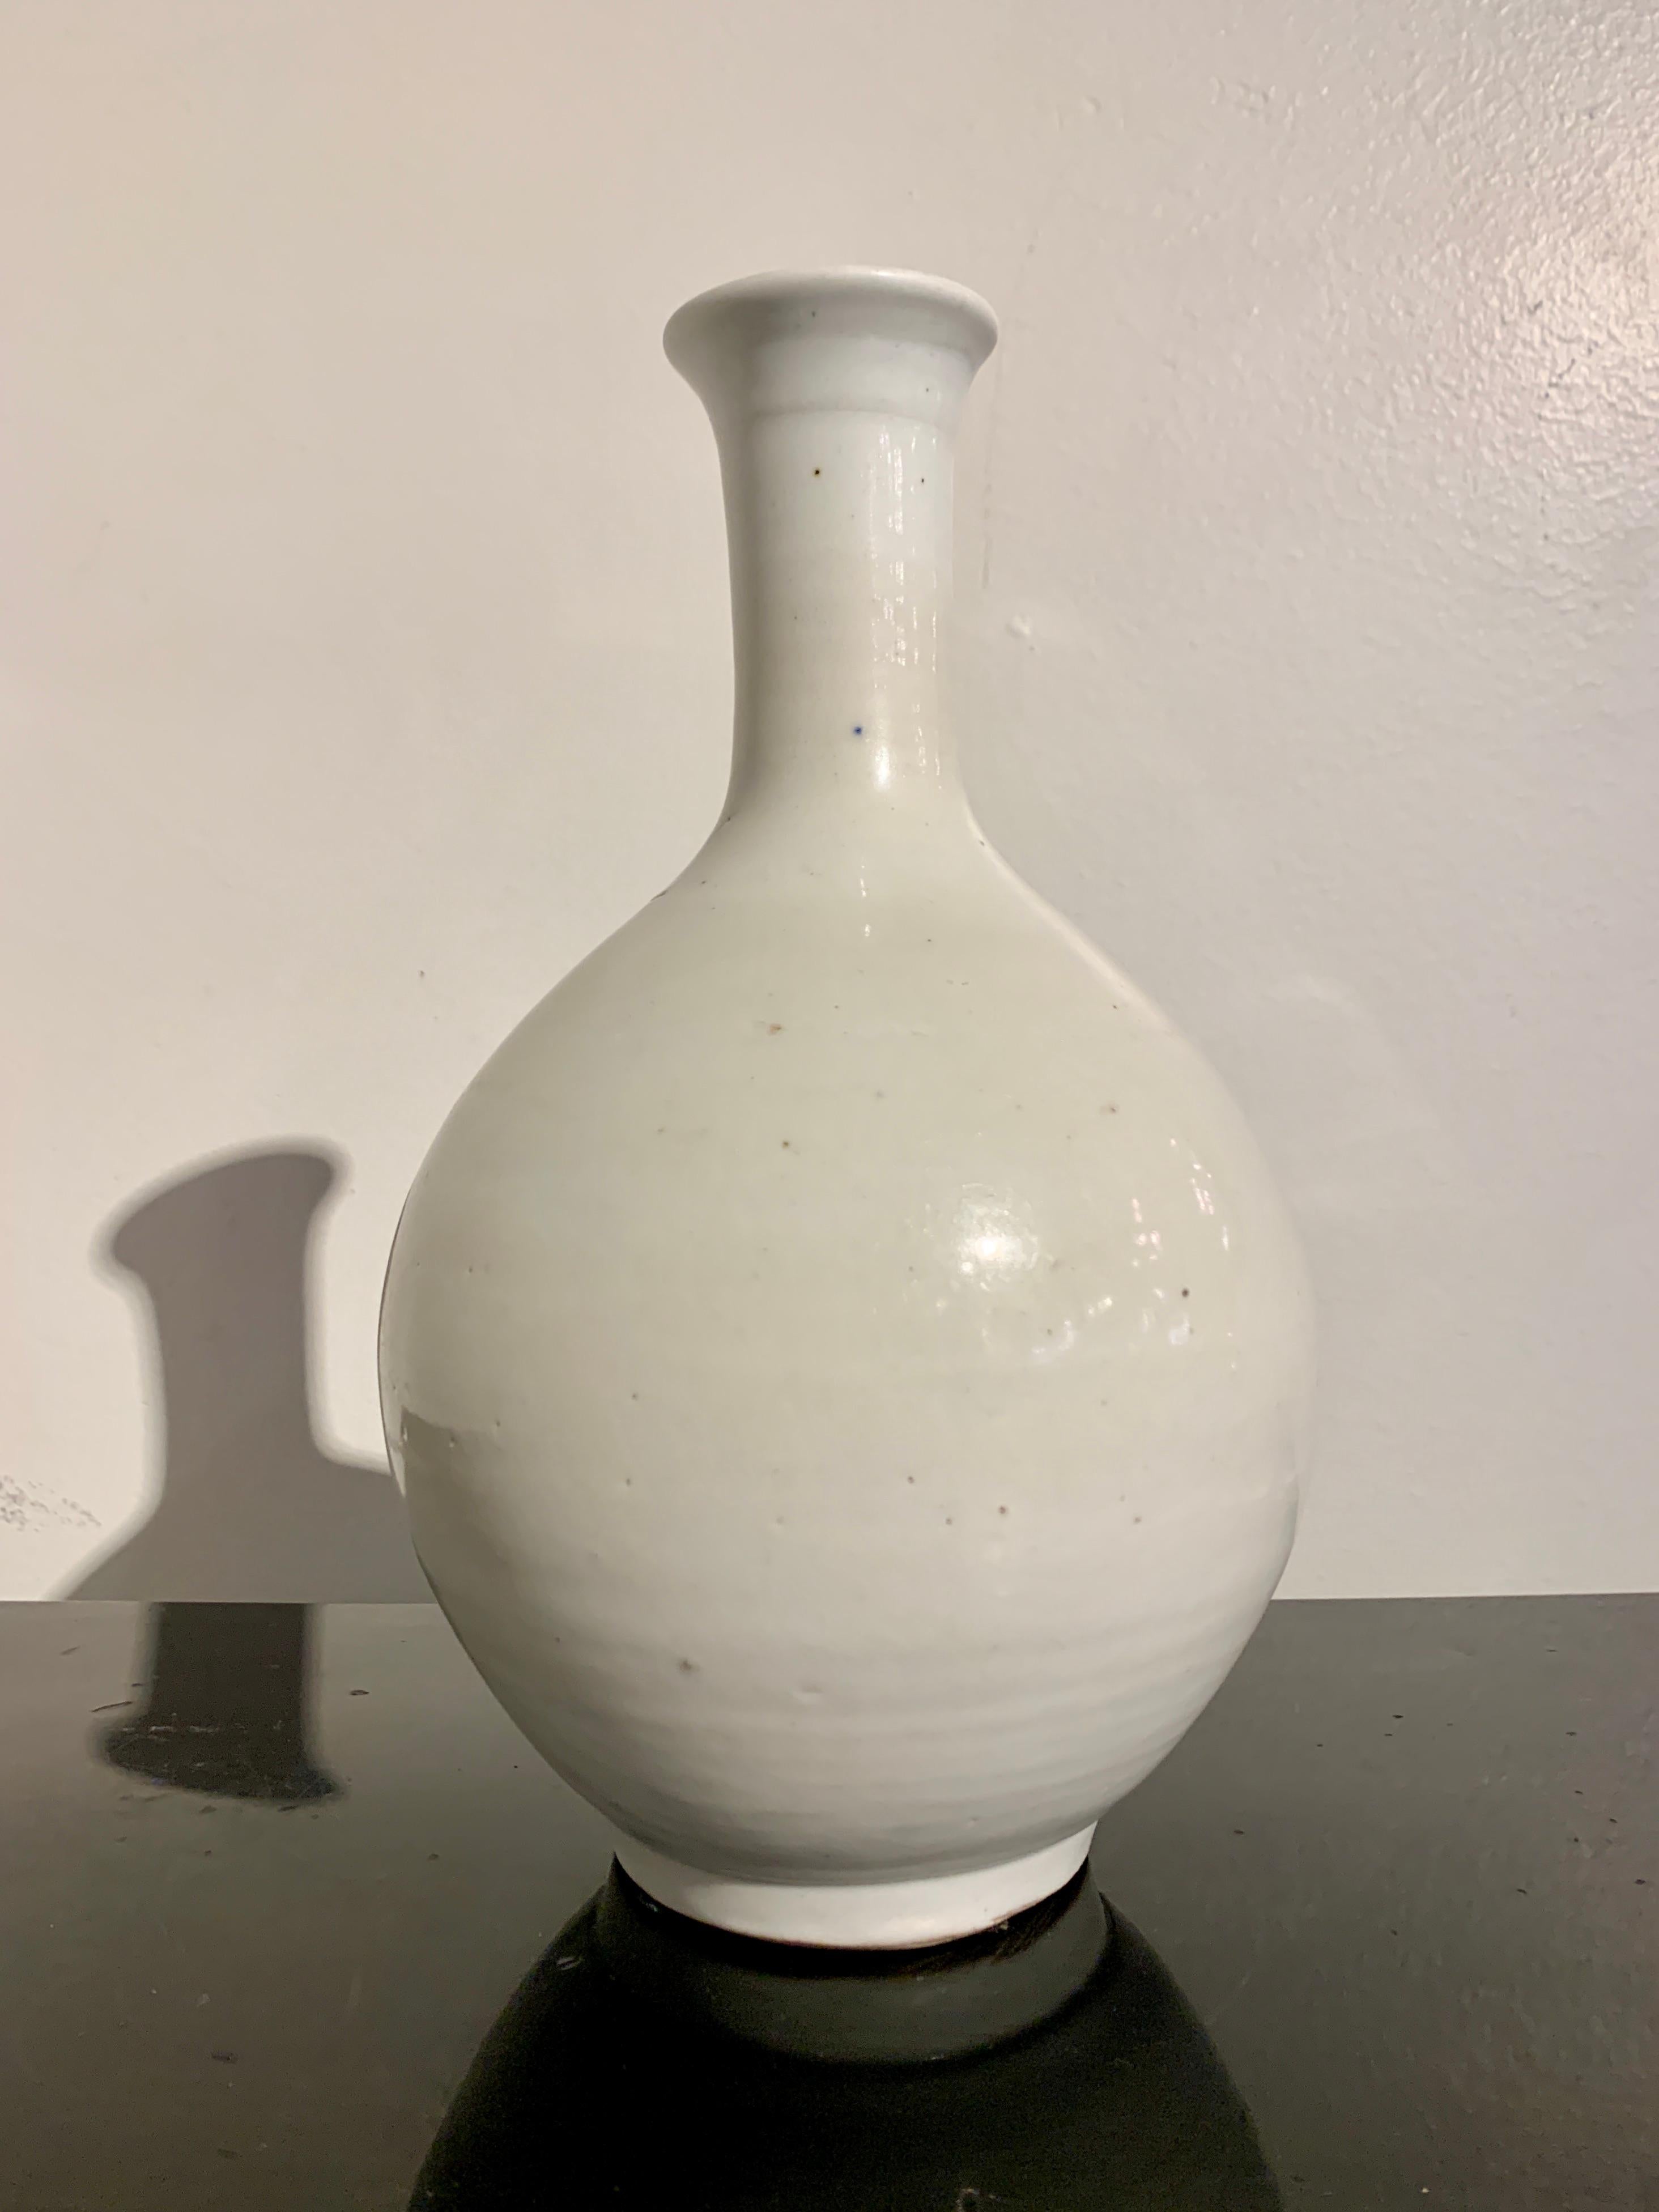 Eine ruhige und elegante koreanische weiß glasierte Flaschenvase, Joseon-Dynastie, Ende 18. Jahrhundert, Korea.

Die zierliche Vase steht auf einem kurzen, vertieften Fuß, hat einen kugelförmigen Körper, einen schmalen Hals und eine leicht nach